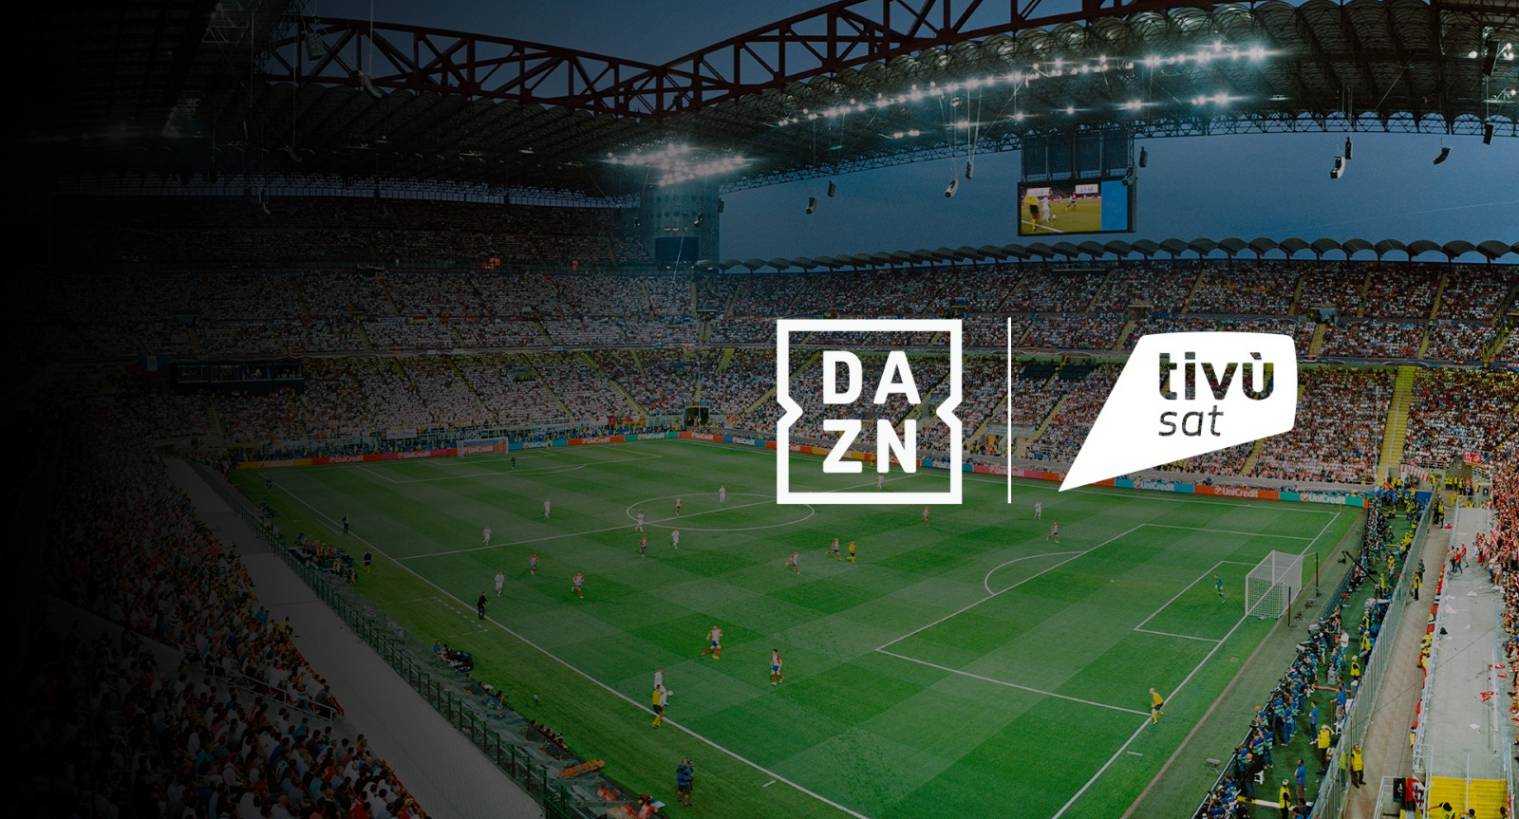 DAZN arriva su tivùsat: il grande sport italiano ora accessibile a tutti